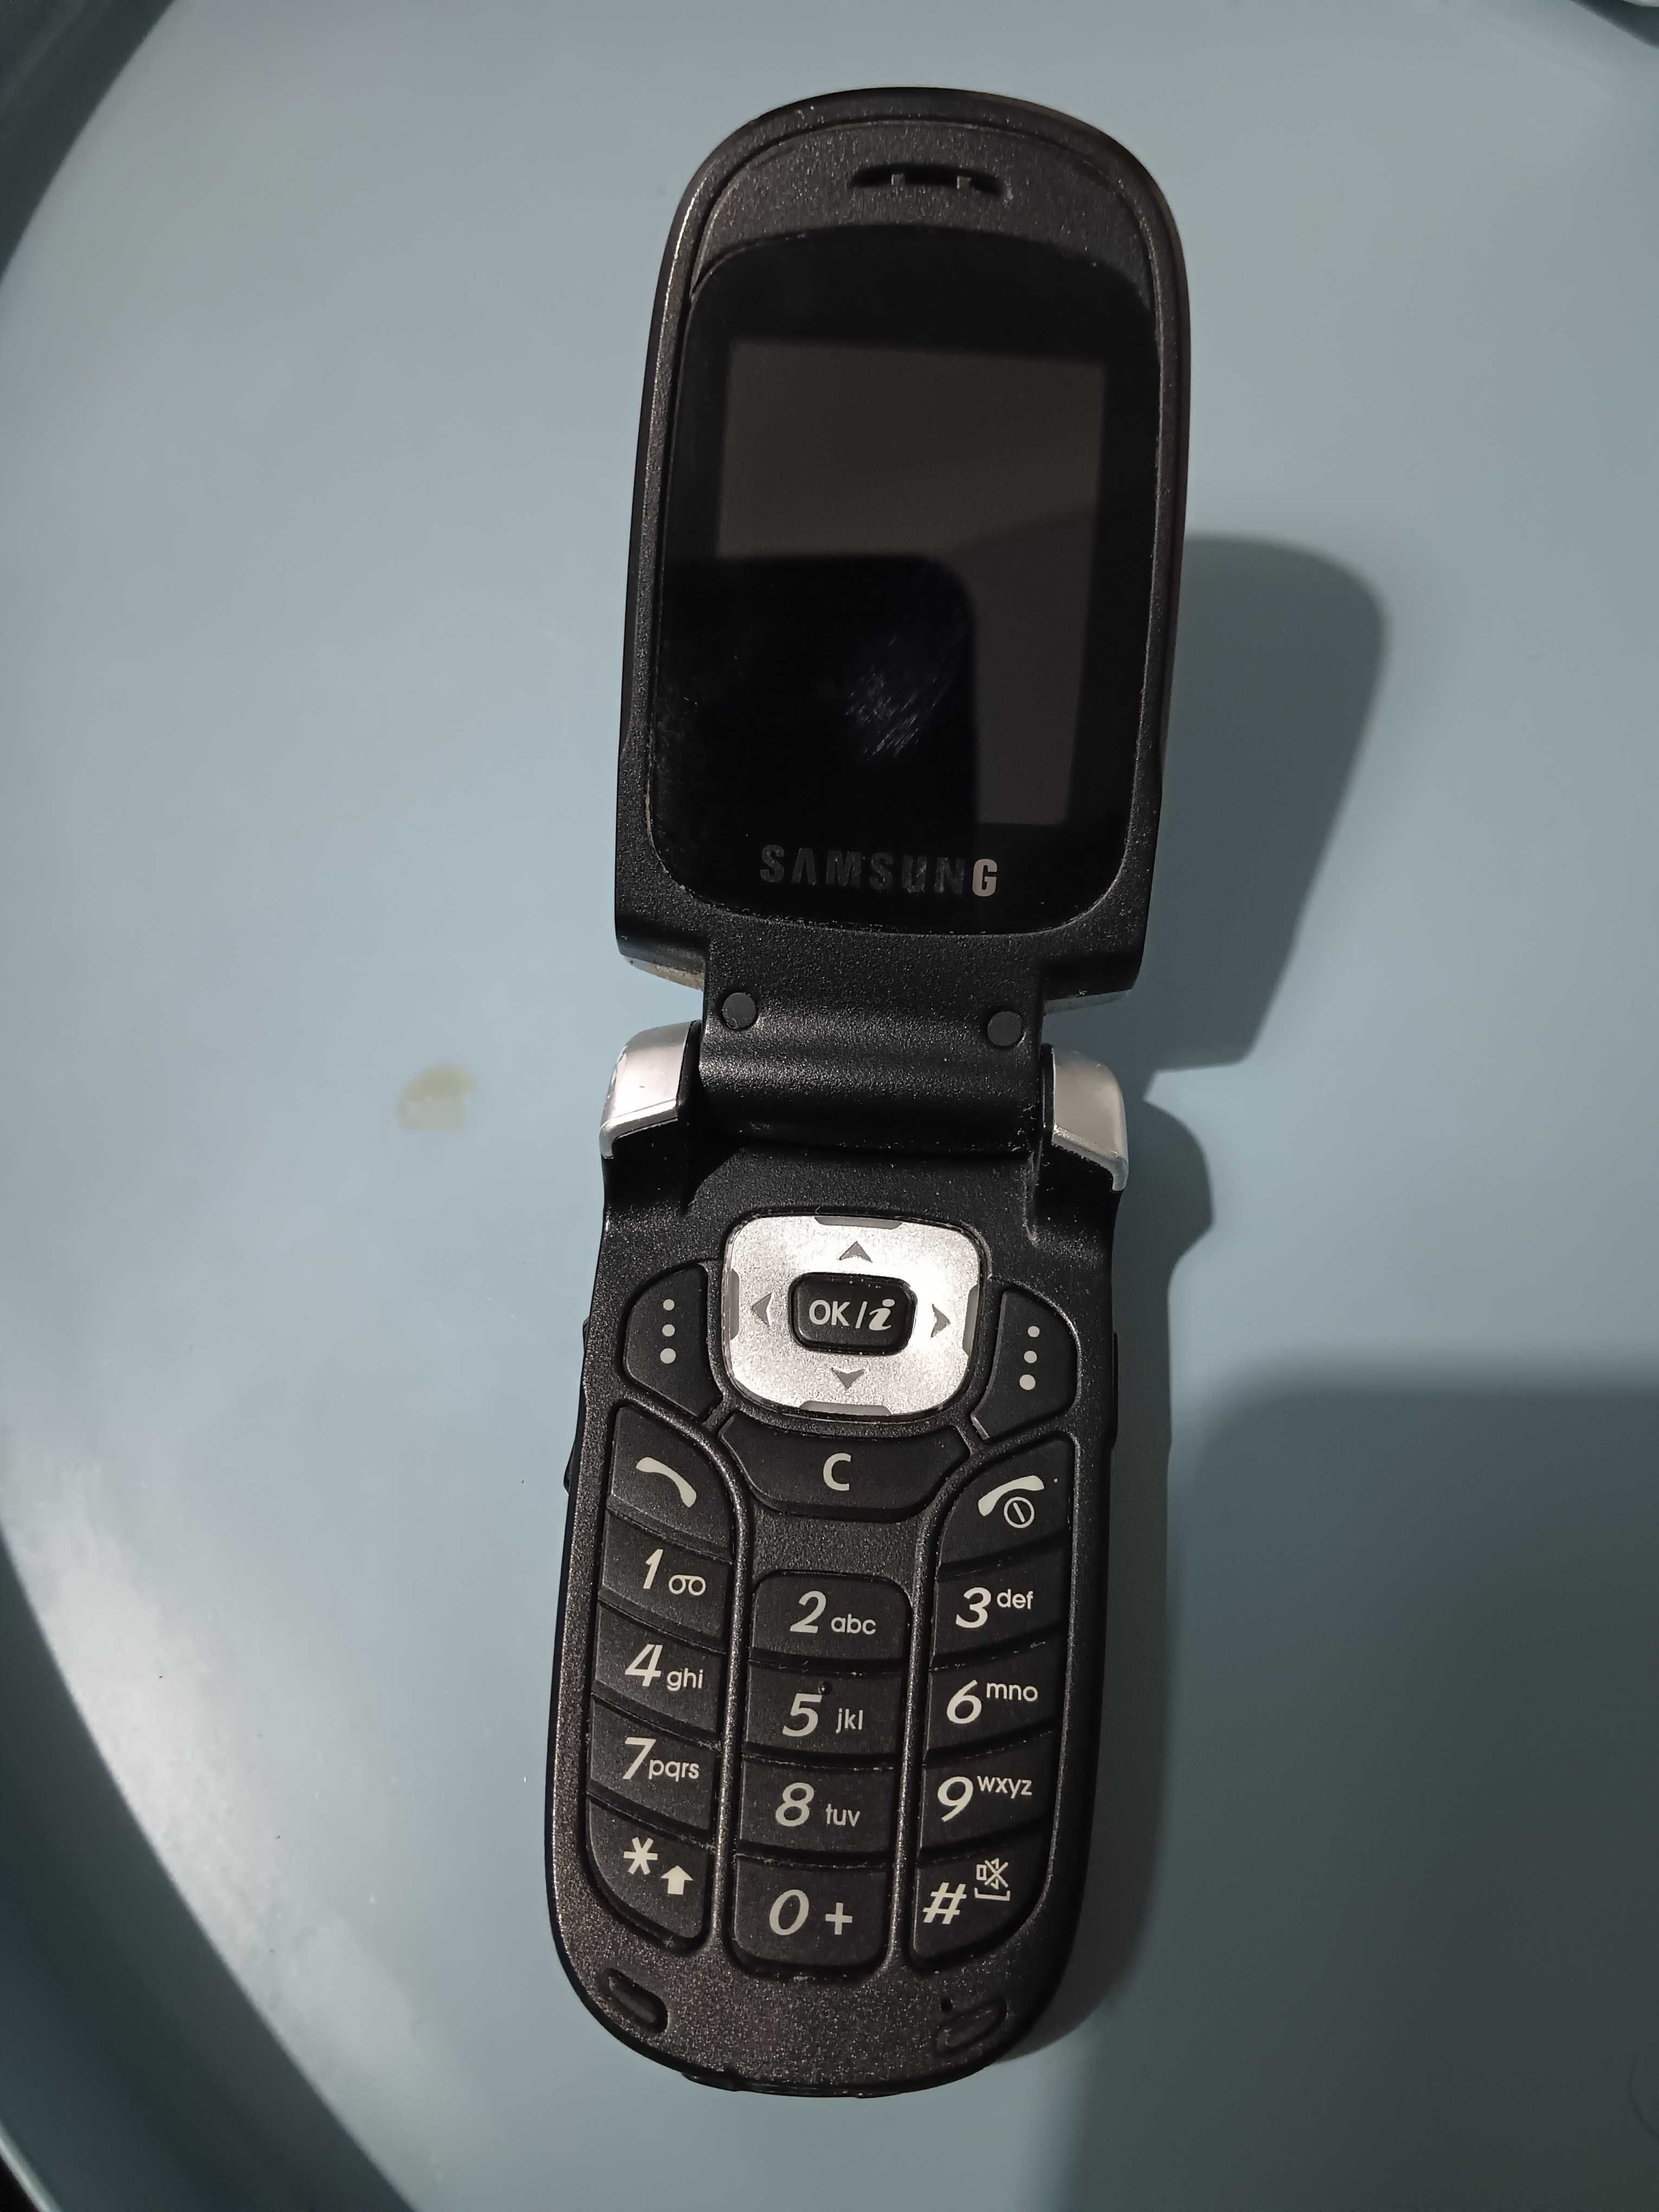 Telemóvel Samsung SGH-X660 antigo colecionador